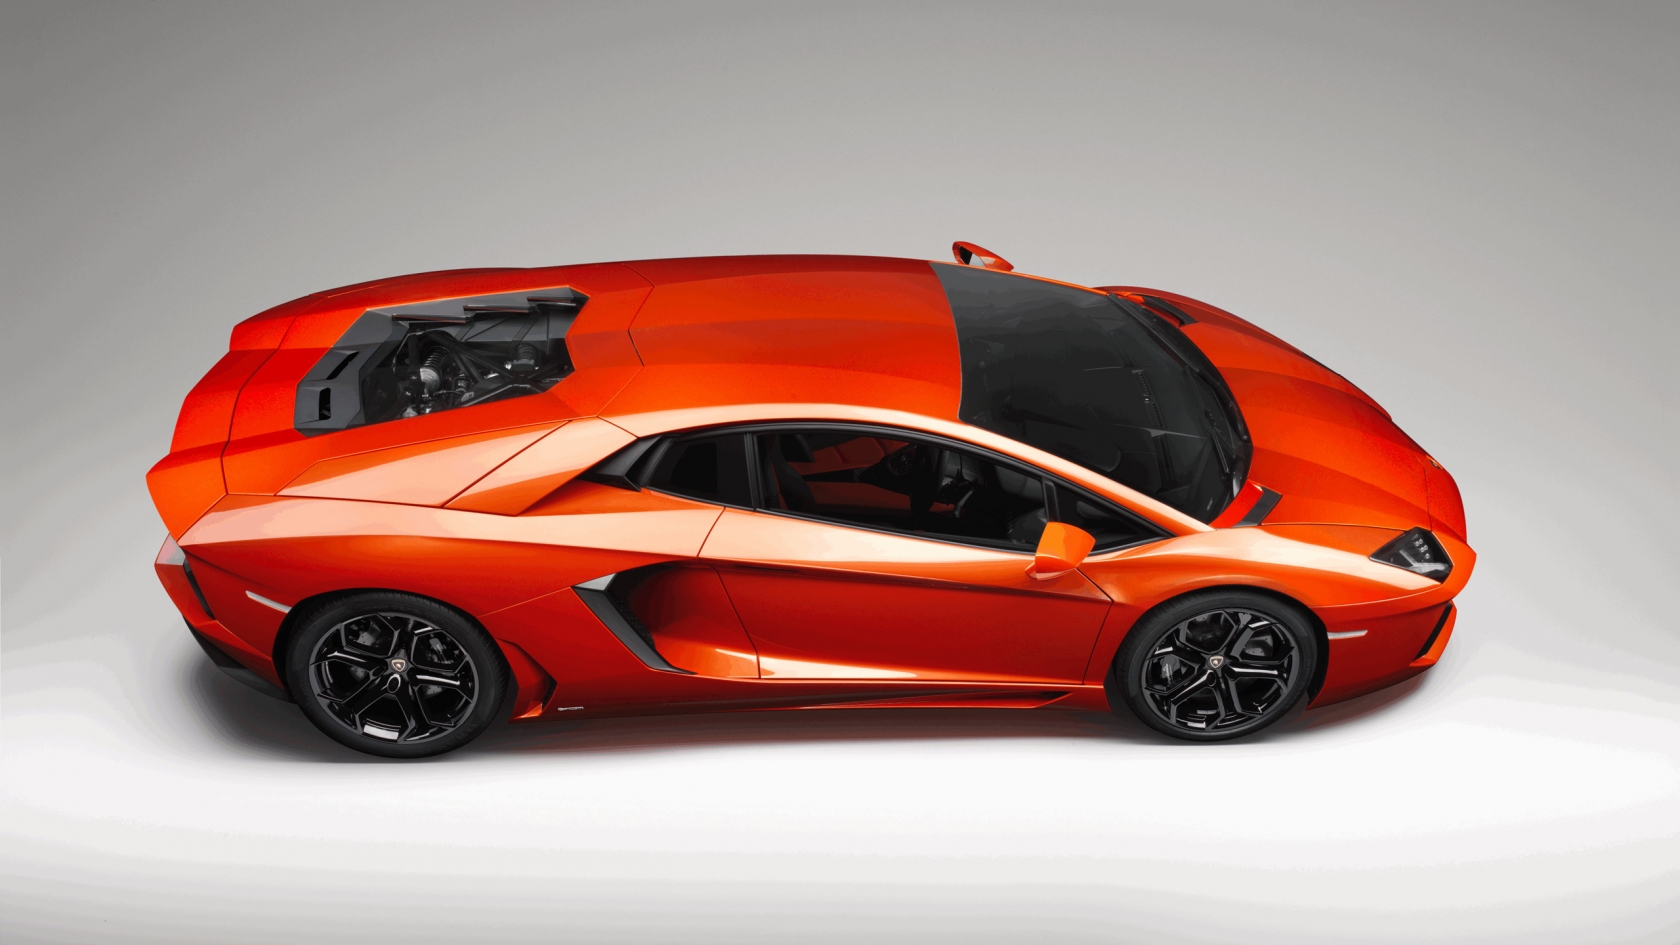 Lamborghini Aventador Studio for 1680 x 945 HDTV resolution